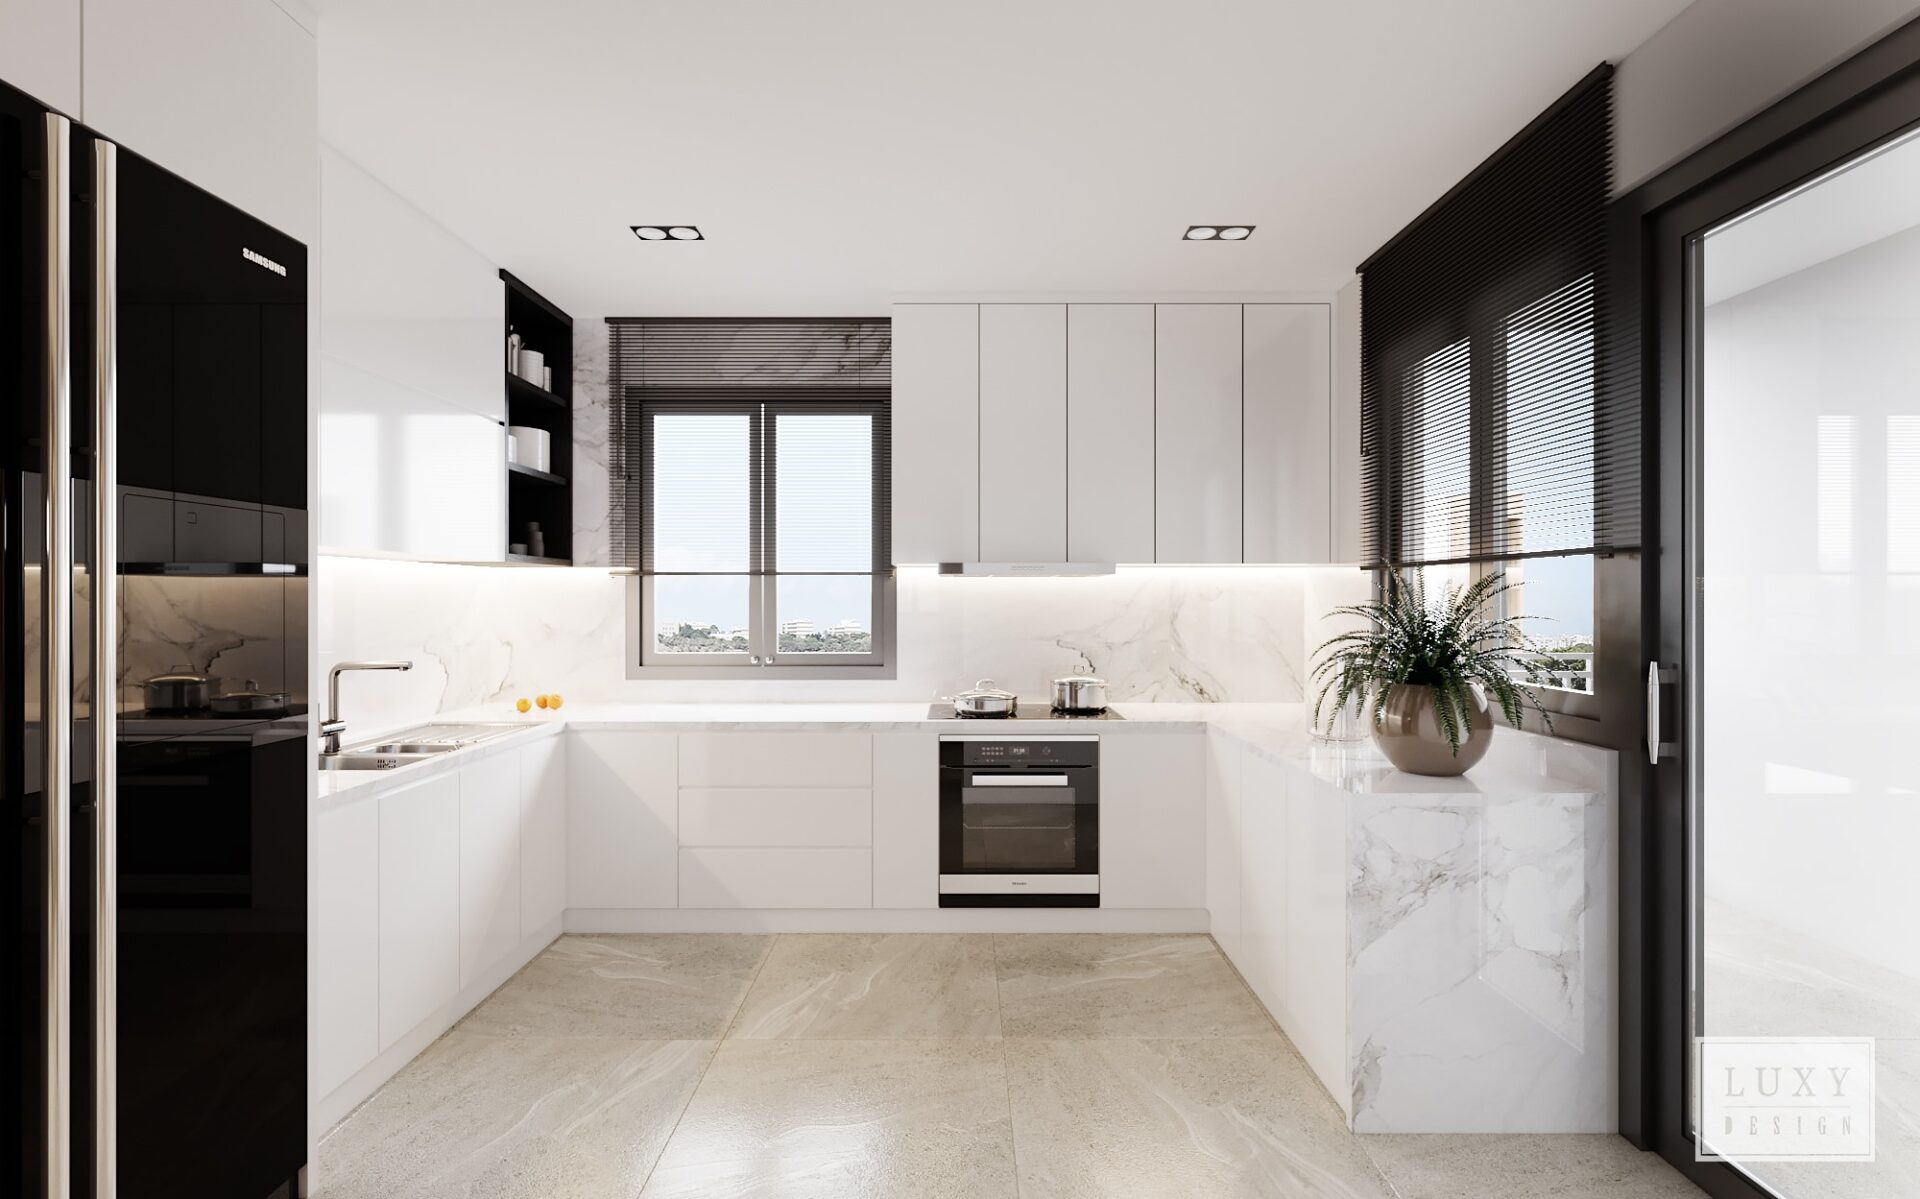 Phòng bếp chọn tông màu trắng và áp đá để đảm bảo vệ sinh